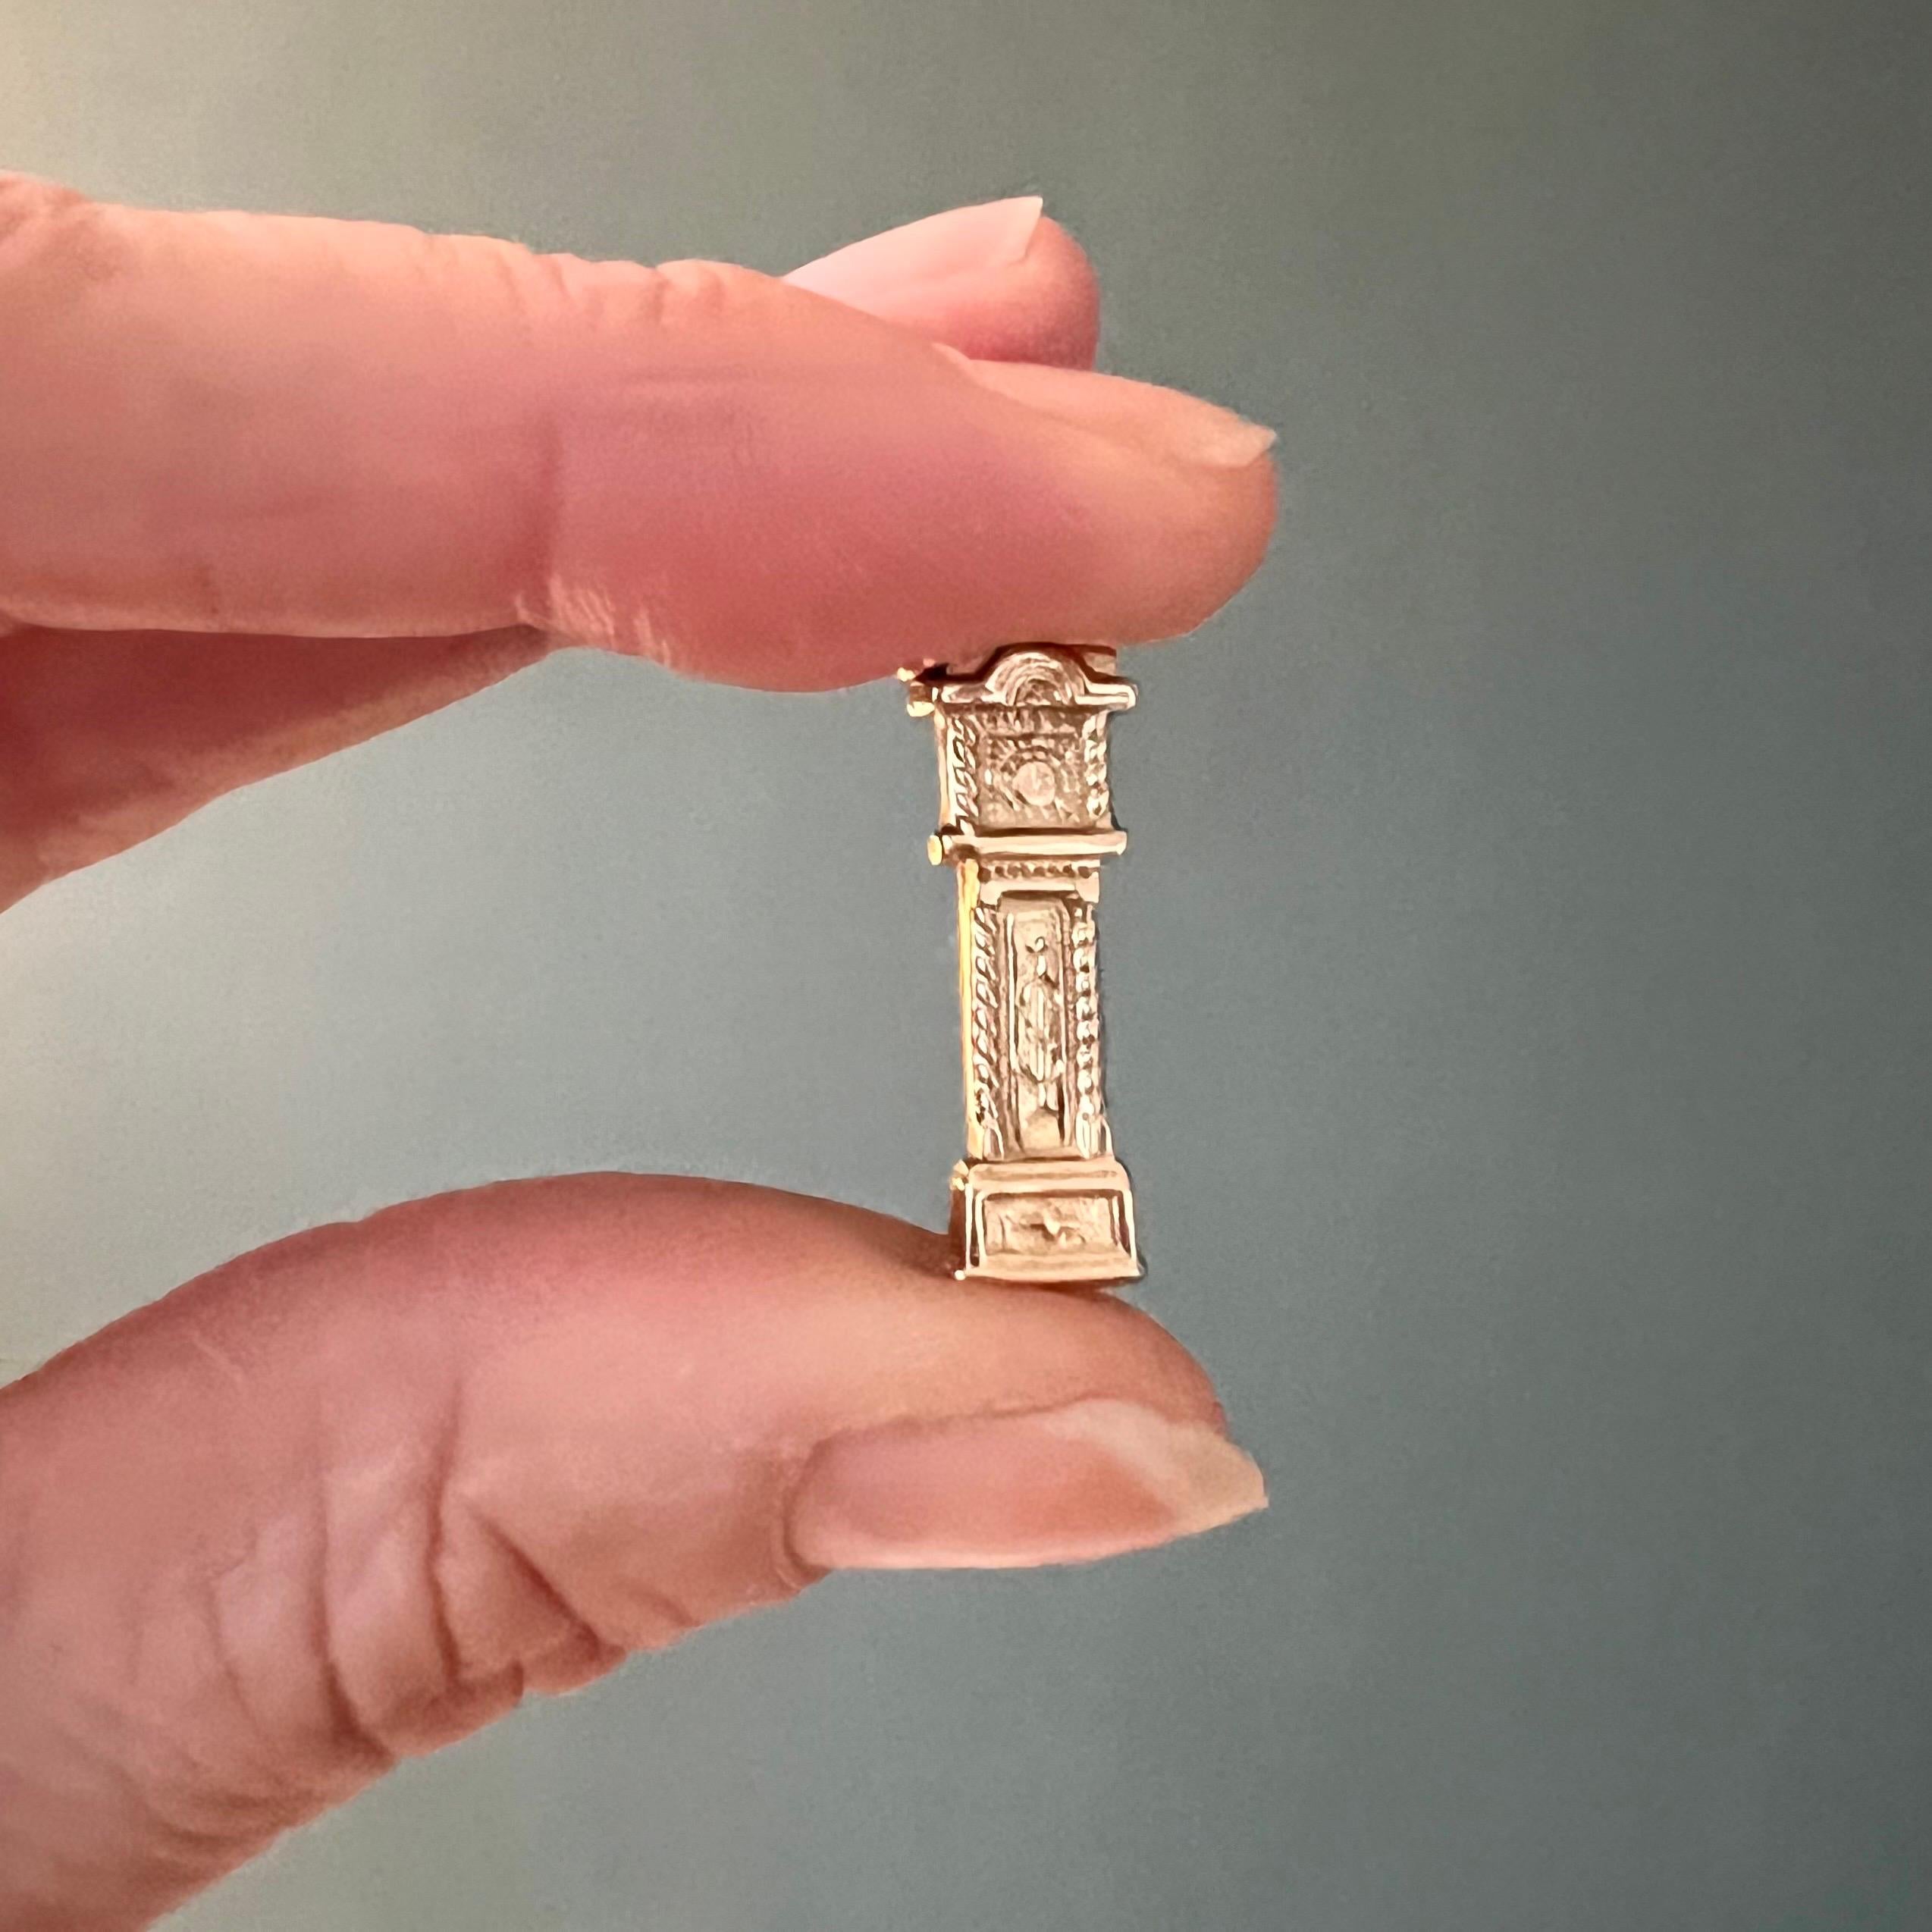 Il s'agit d'un pendentif en or 9 carats en forme de charme de coucou vintage. La breloque du coucou est joliment détaillée et comporte de belles gravures.

Les charms sont des souvenirs à porter sur soi, ils ont une valeur symbolique et souvent